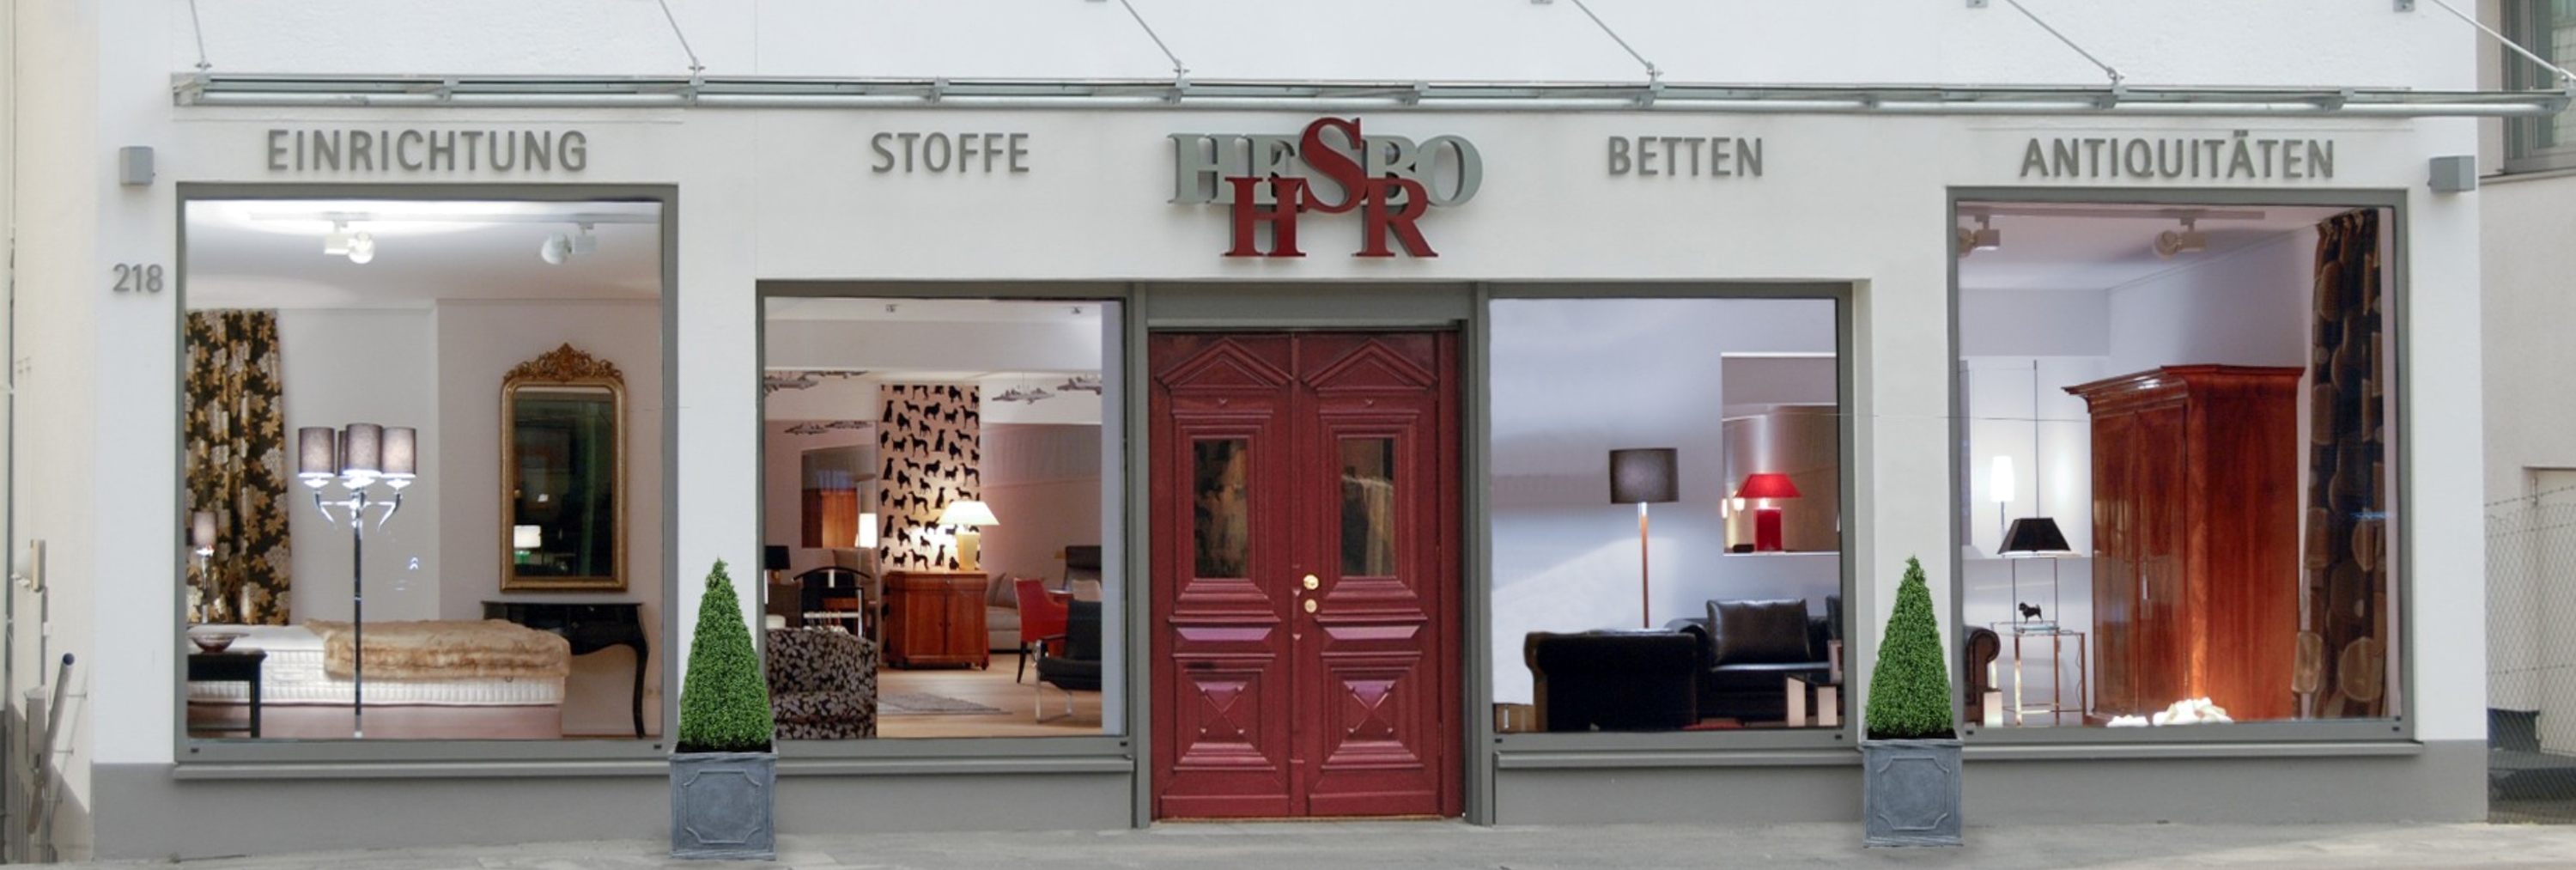 Rote Eingangstür von HSR Hesbo in Bonn, Römerstraße 218